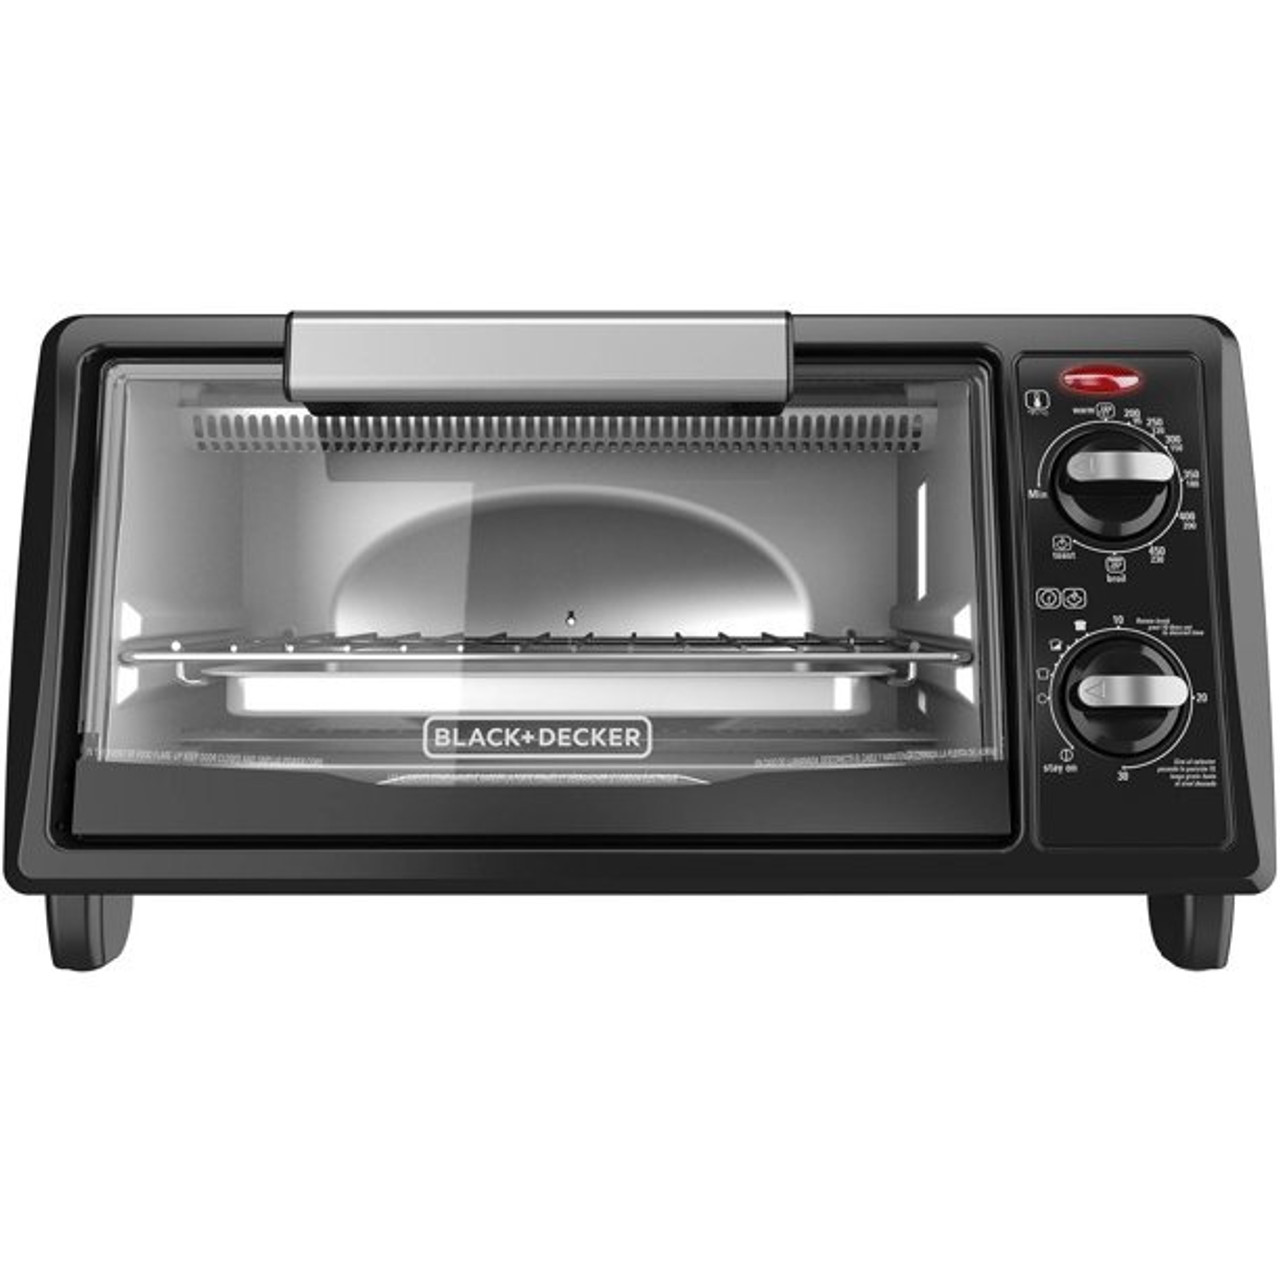 Black & Decker Bd 4 Slice Toaster Oven White